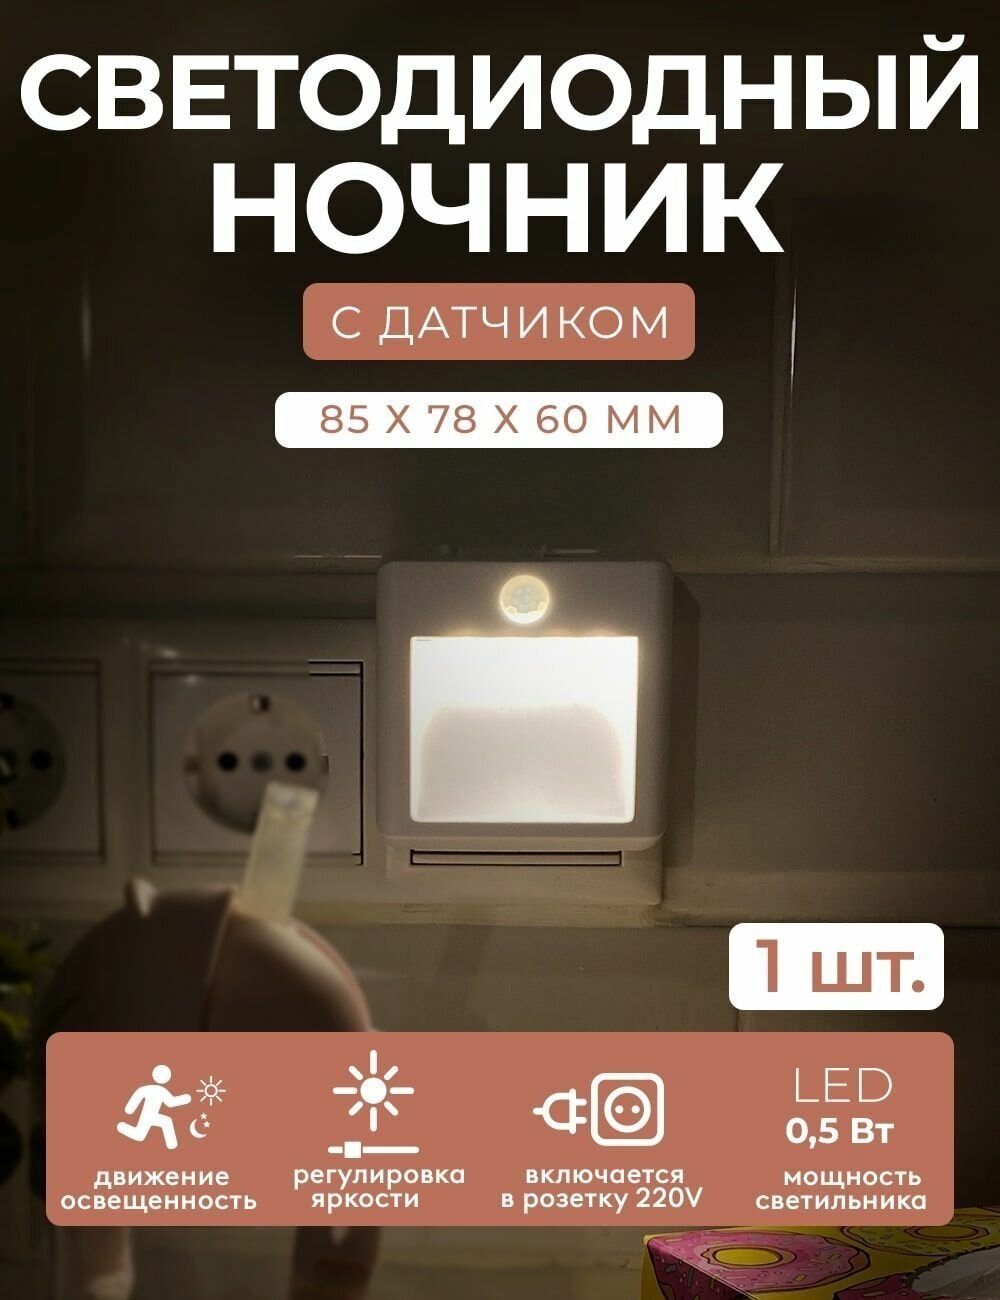 LED подсветка, светодиодный ночник гелеос К7 0.5Вт, датчик движения и освещенности, 3 режима, для кухни, прихожей, ванной - фотография № 1